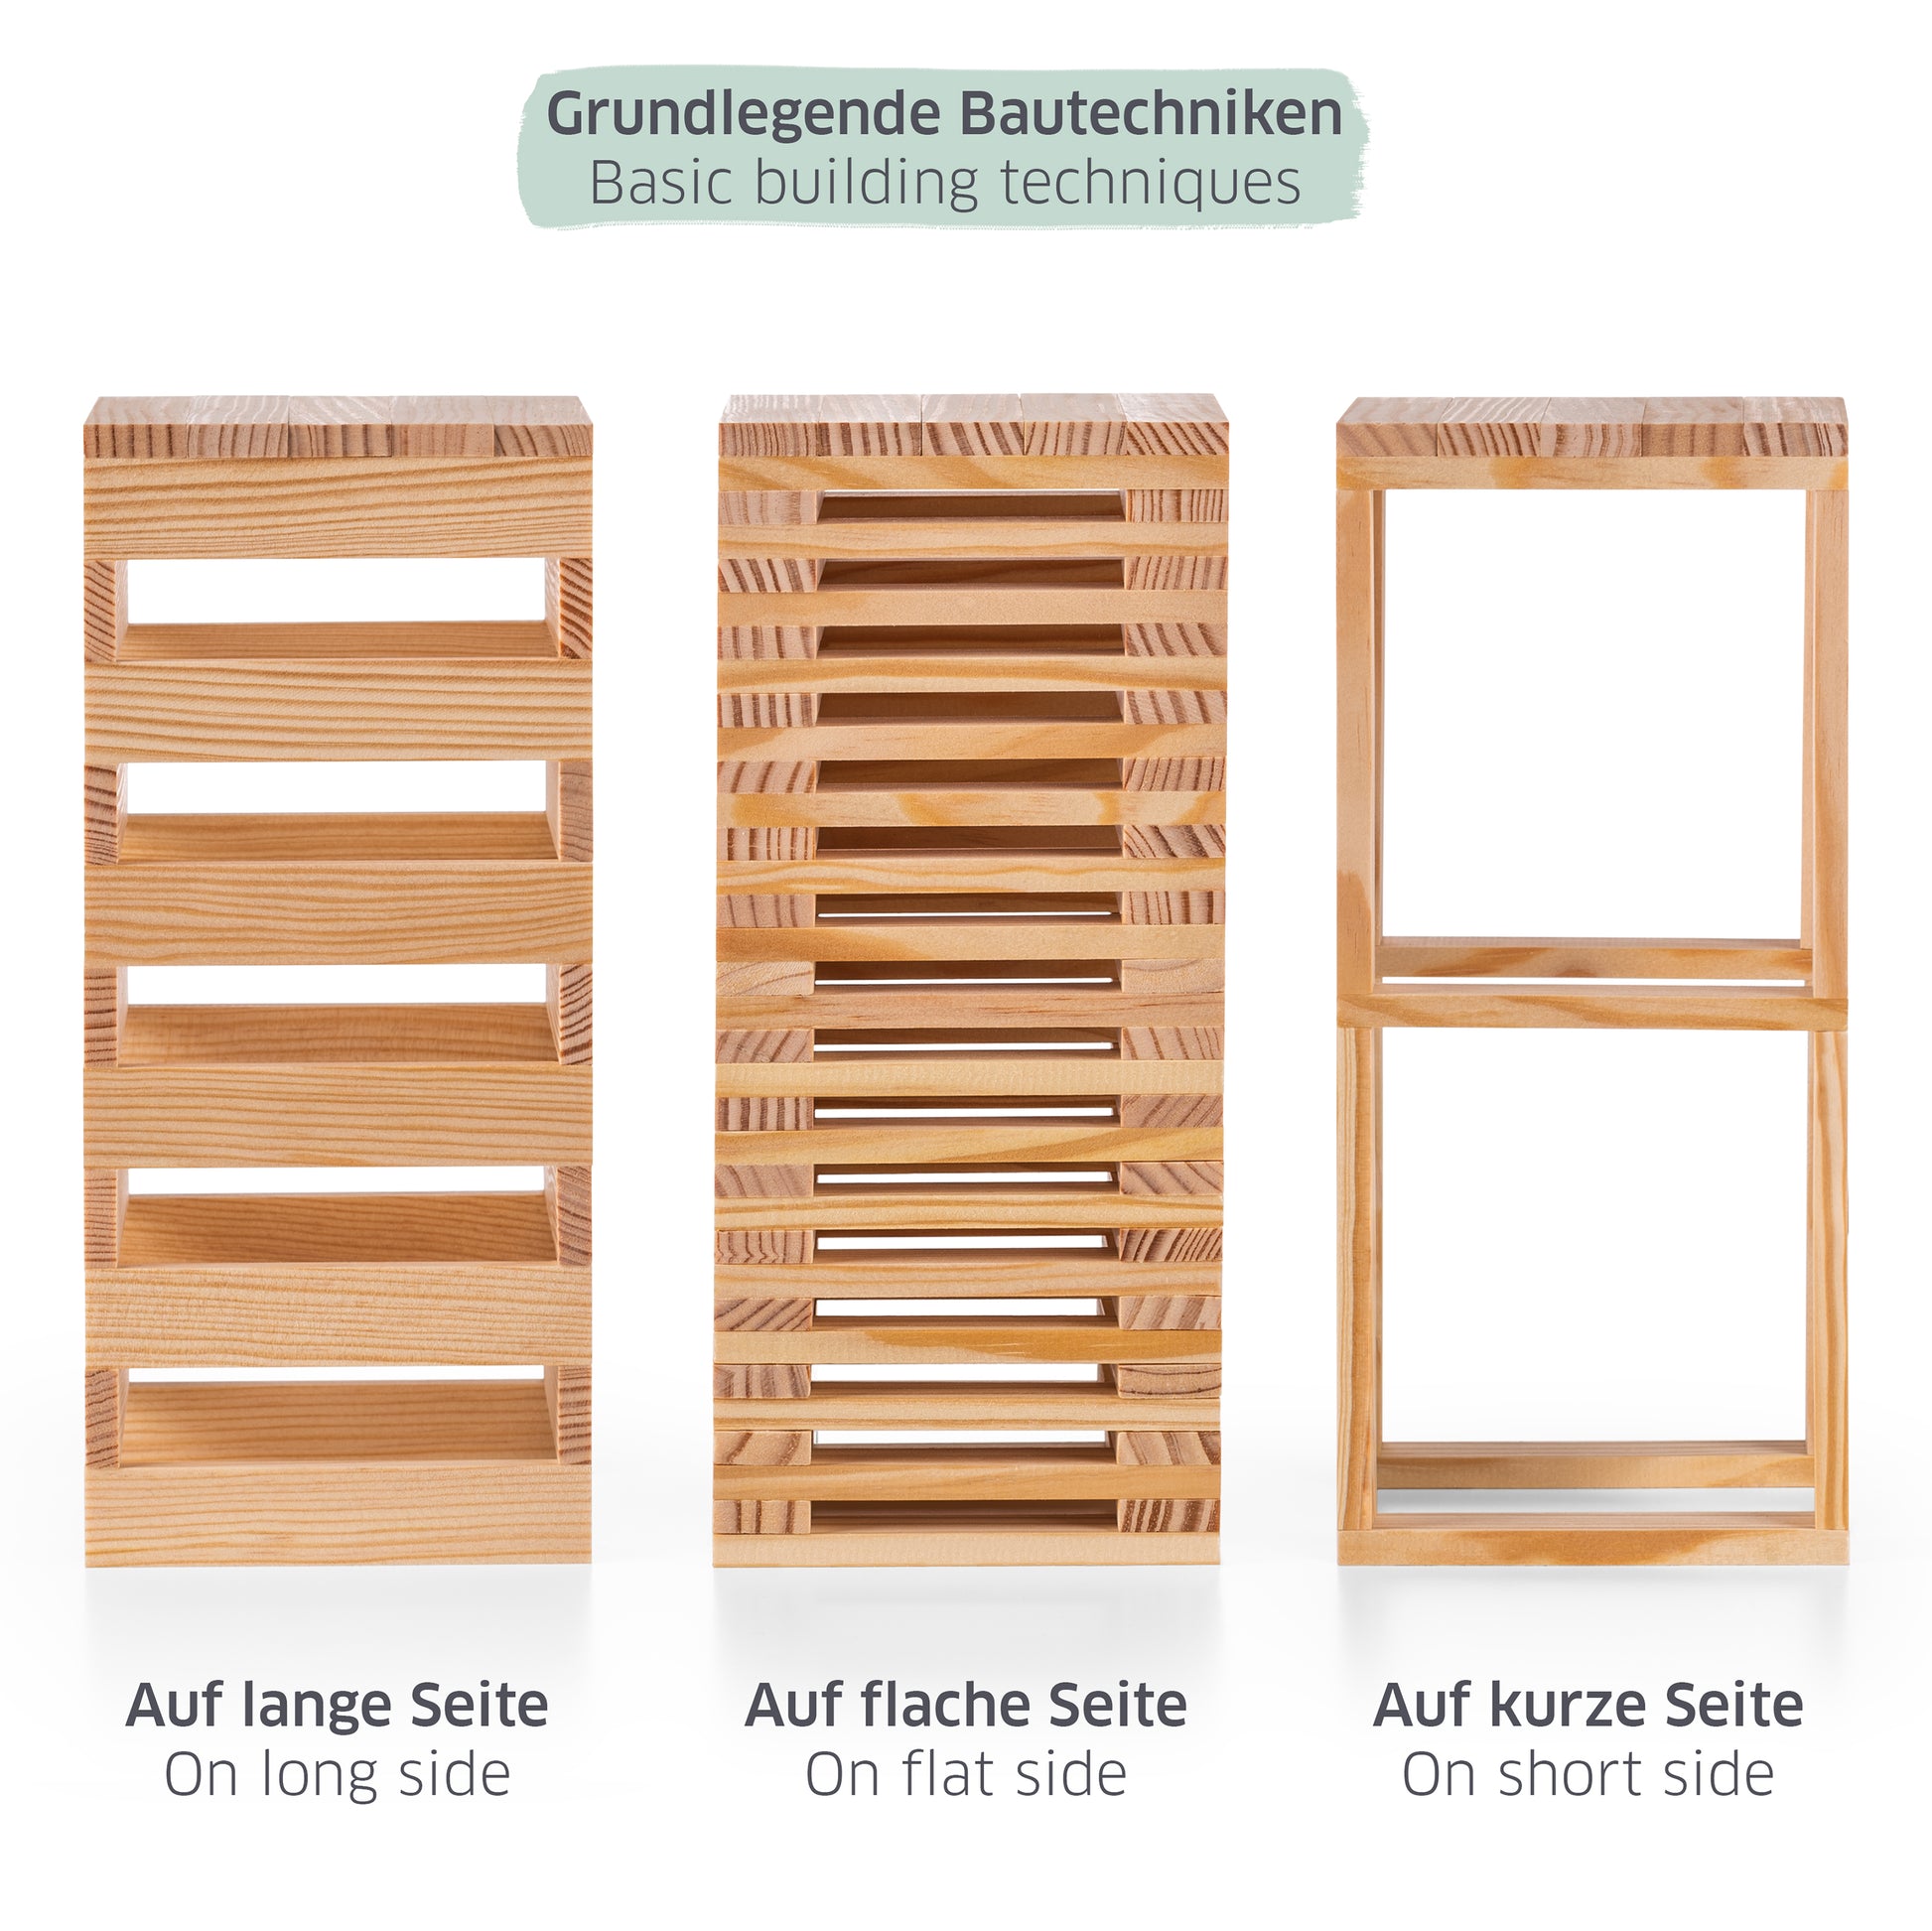 Drei verschiedene Stapelmethoden für Holzklötze, beschriftet mit Auf lange Seite, Auf flache Seite und Auf kurze Seite, grüner Balken mit Grundlegende Bautechniken oben.